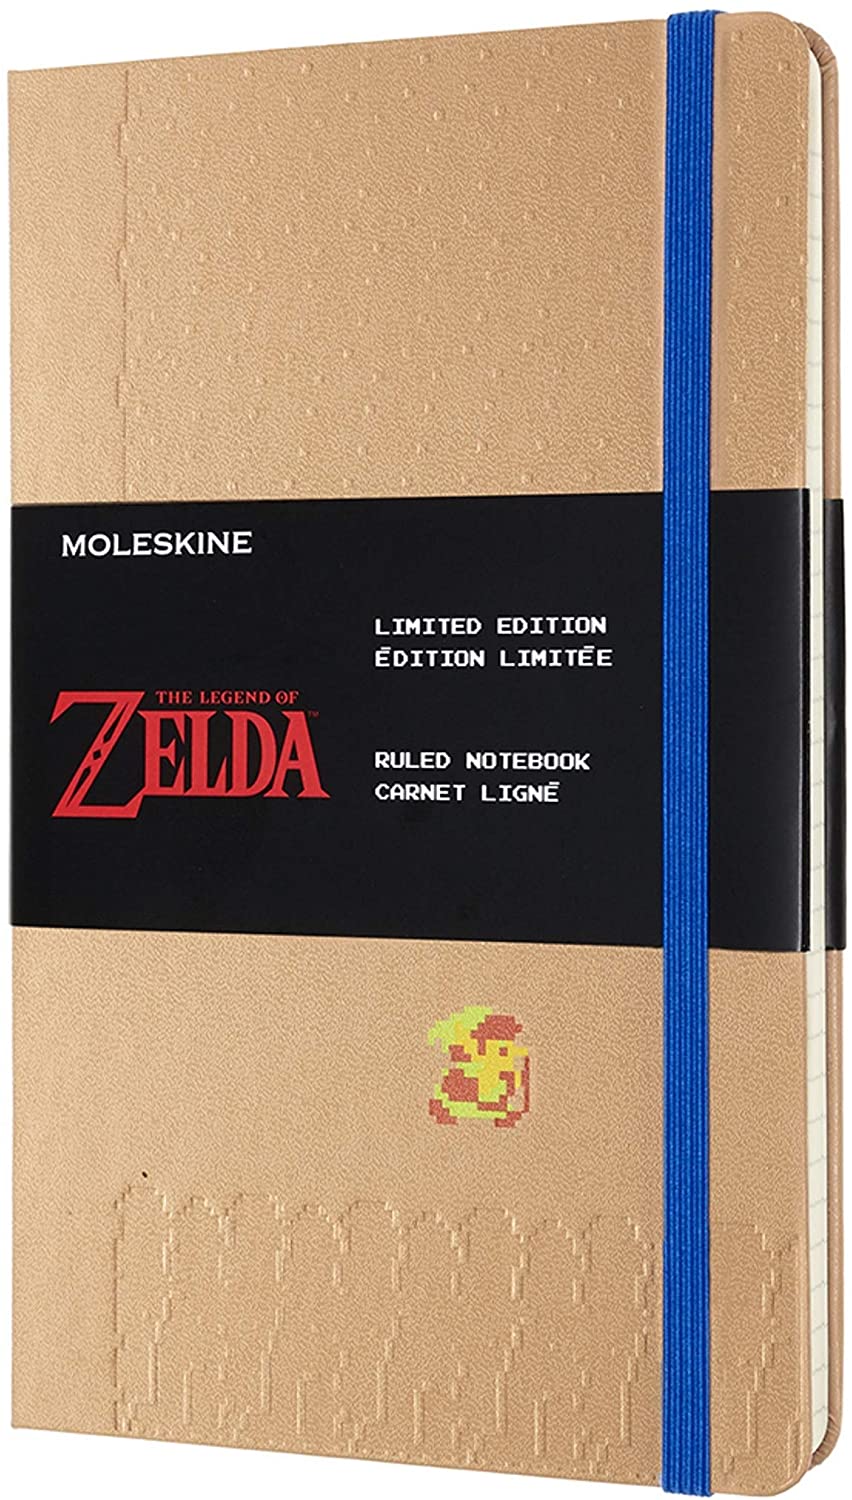 Carnet - Moleskine The Legend of Zelda Link Theme Limited Edition - Ruled Notebook | Moleskine